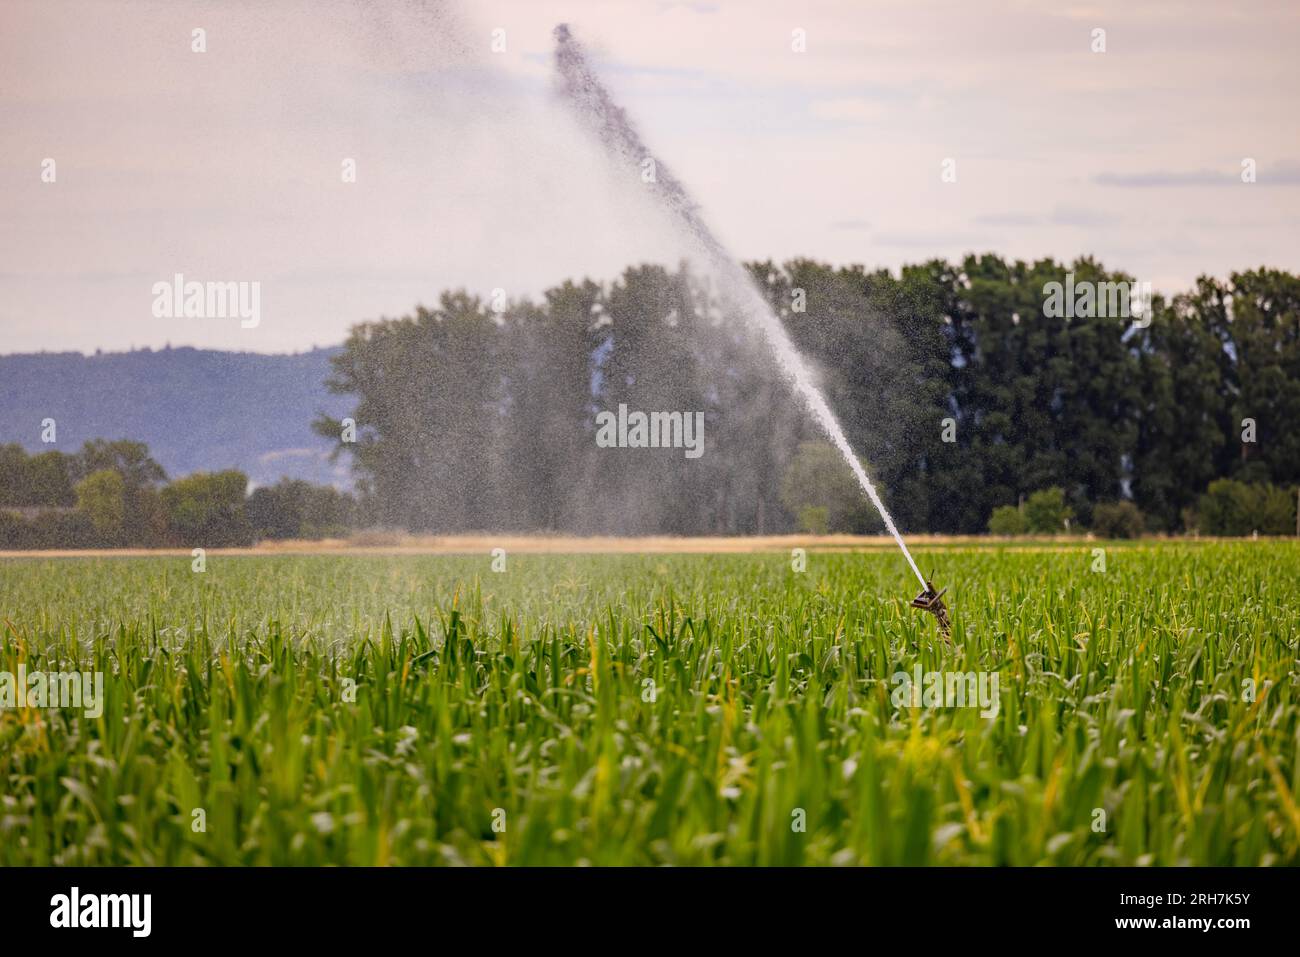 Arroseur mobile d'une irrigation dans un champ de maïs dans l'eau chaude de pulvérisation d'été, Allemagne Banque D'Images